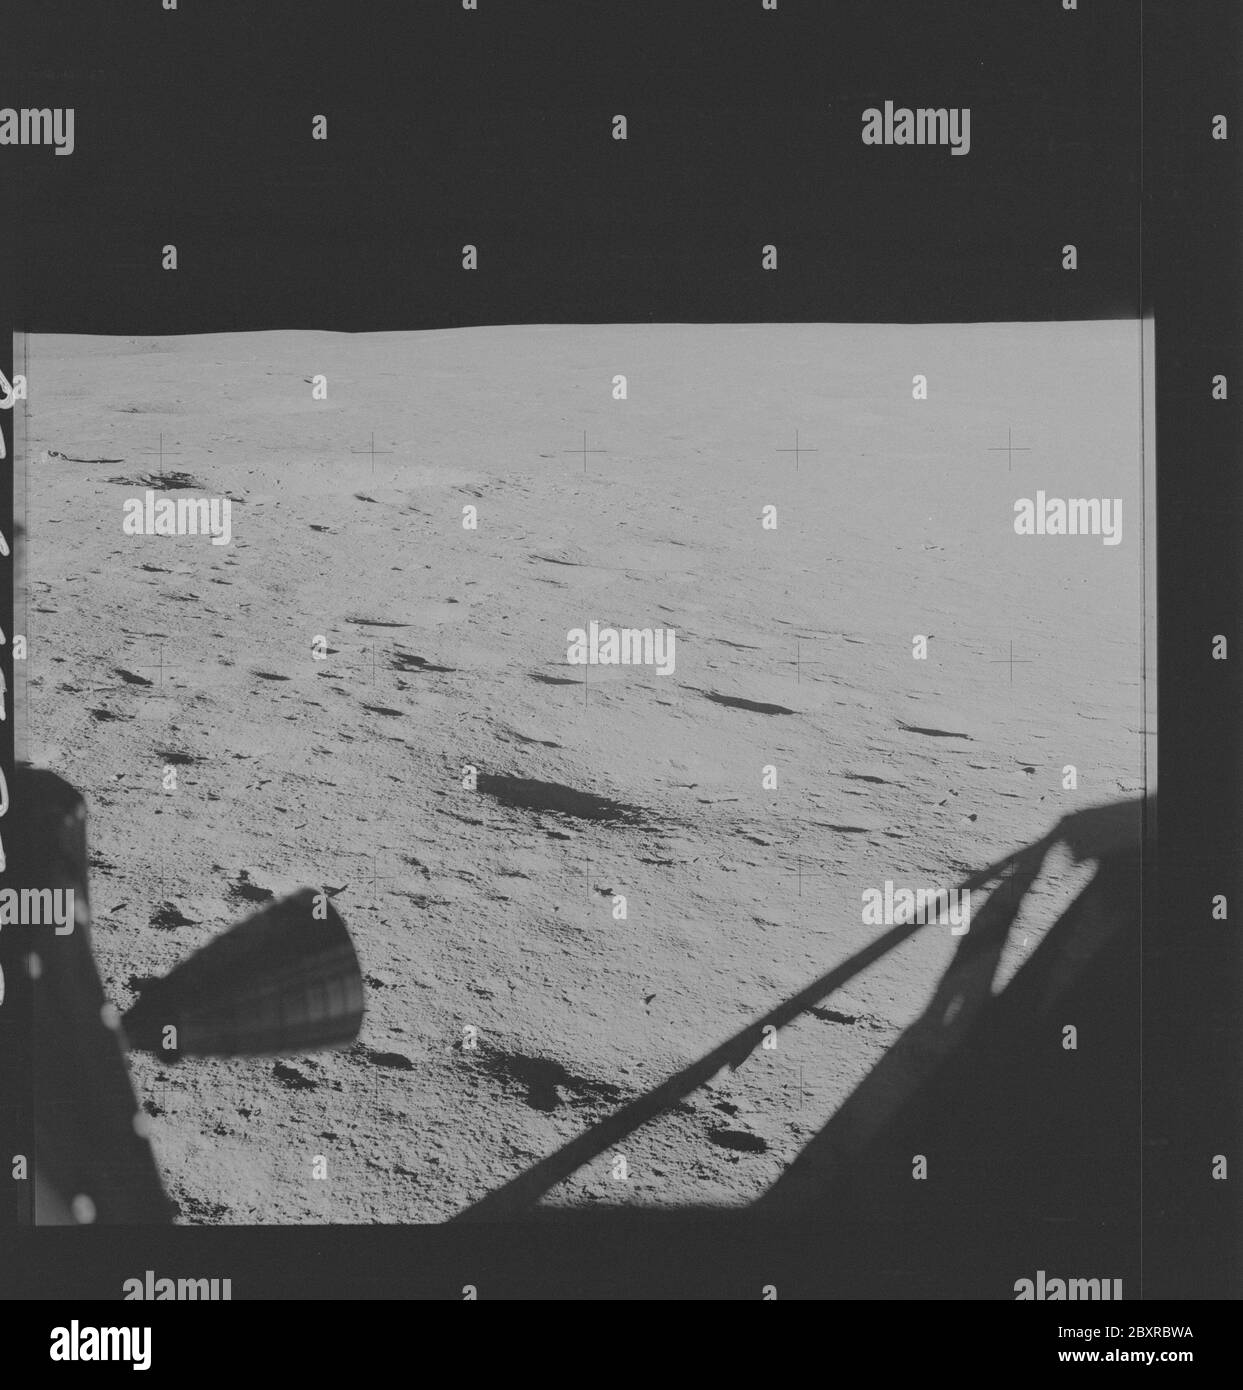 AS14-65-9209 - Apollo 14 - Apollo 14 image de mission - vue de la fenêtre  du module lunaire de la surface lunaire au sud-ouest.; portée et contenu:  La base de données originale